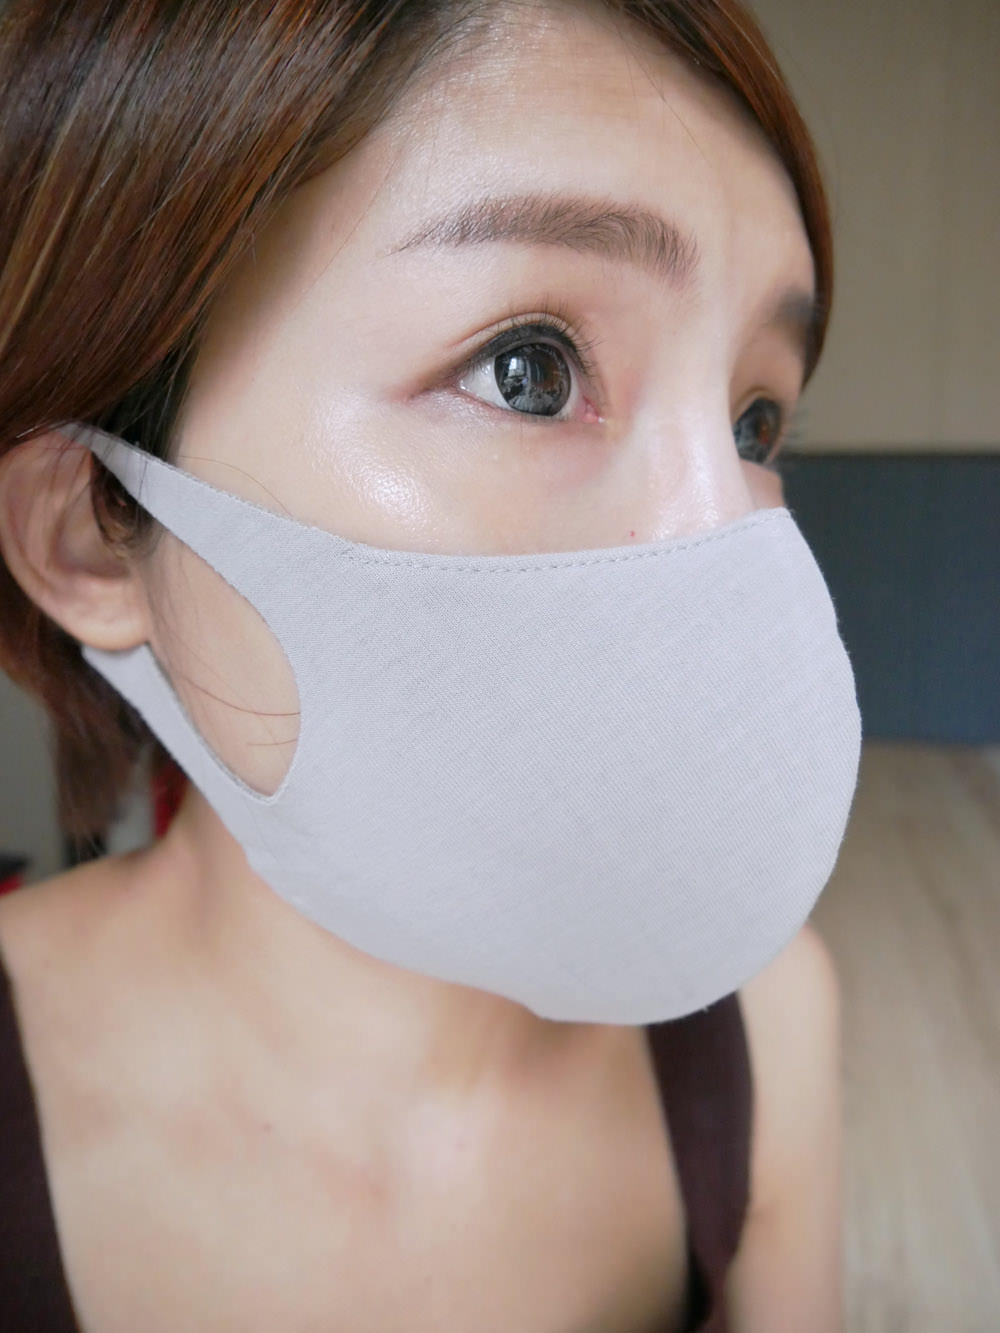 [好物] ESCURA多機能防霾美顏口罩外出必備!預防髒空汙對抗PM2.5還要很時尚